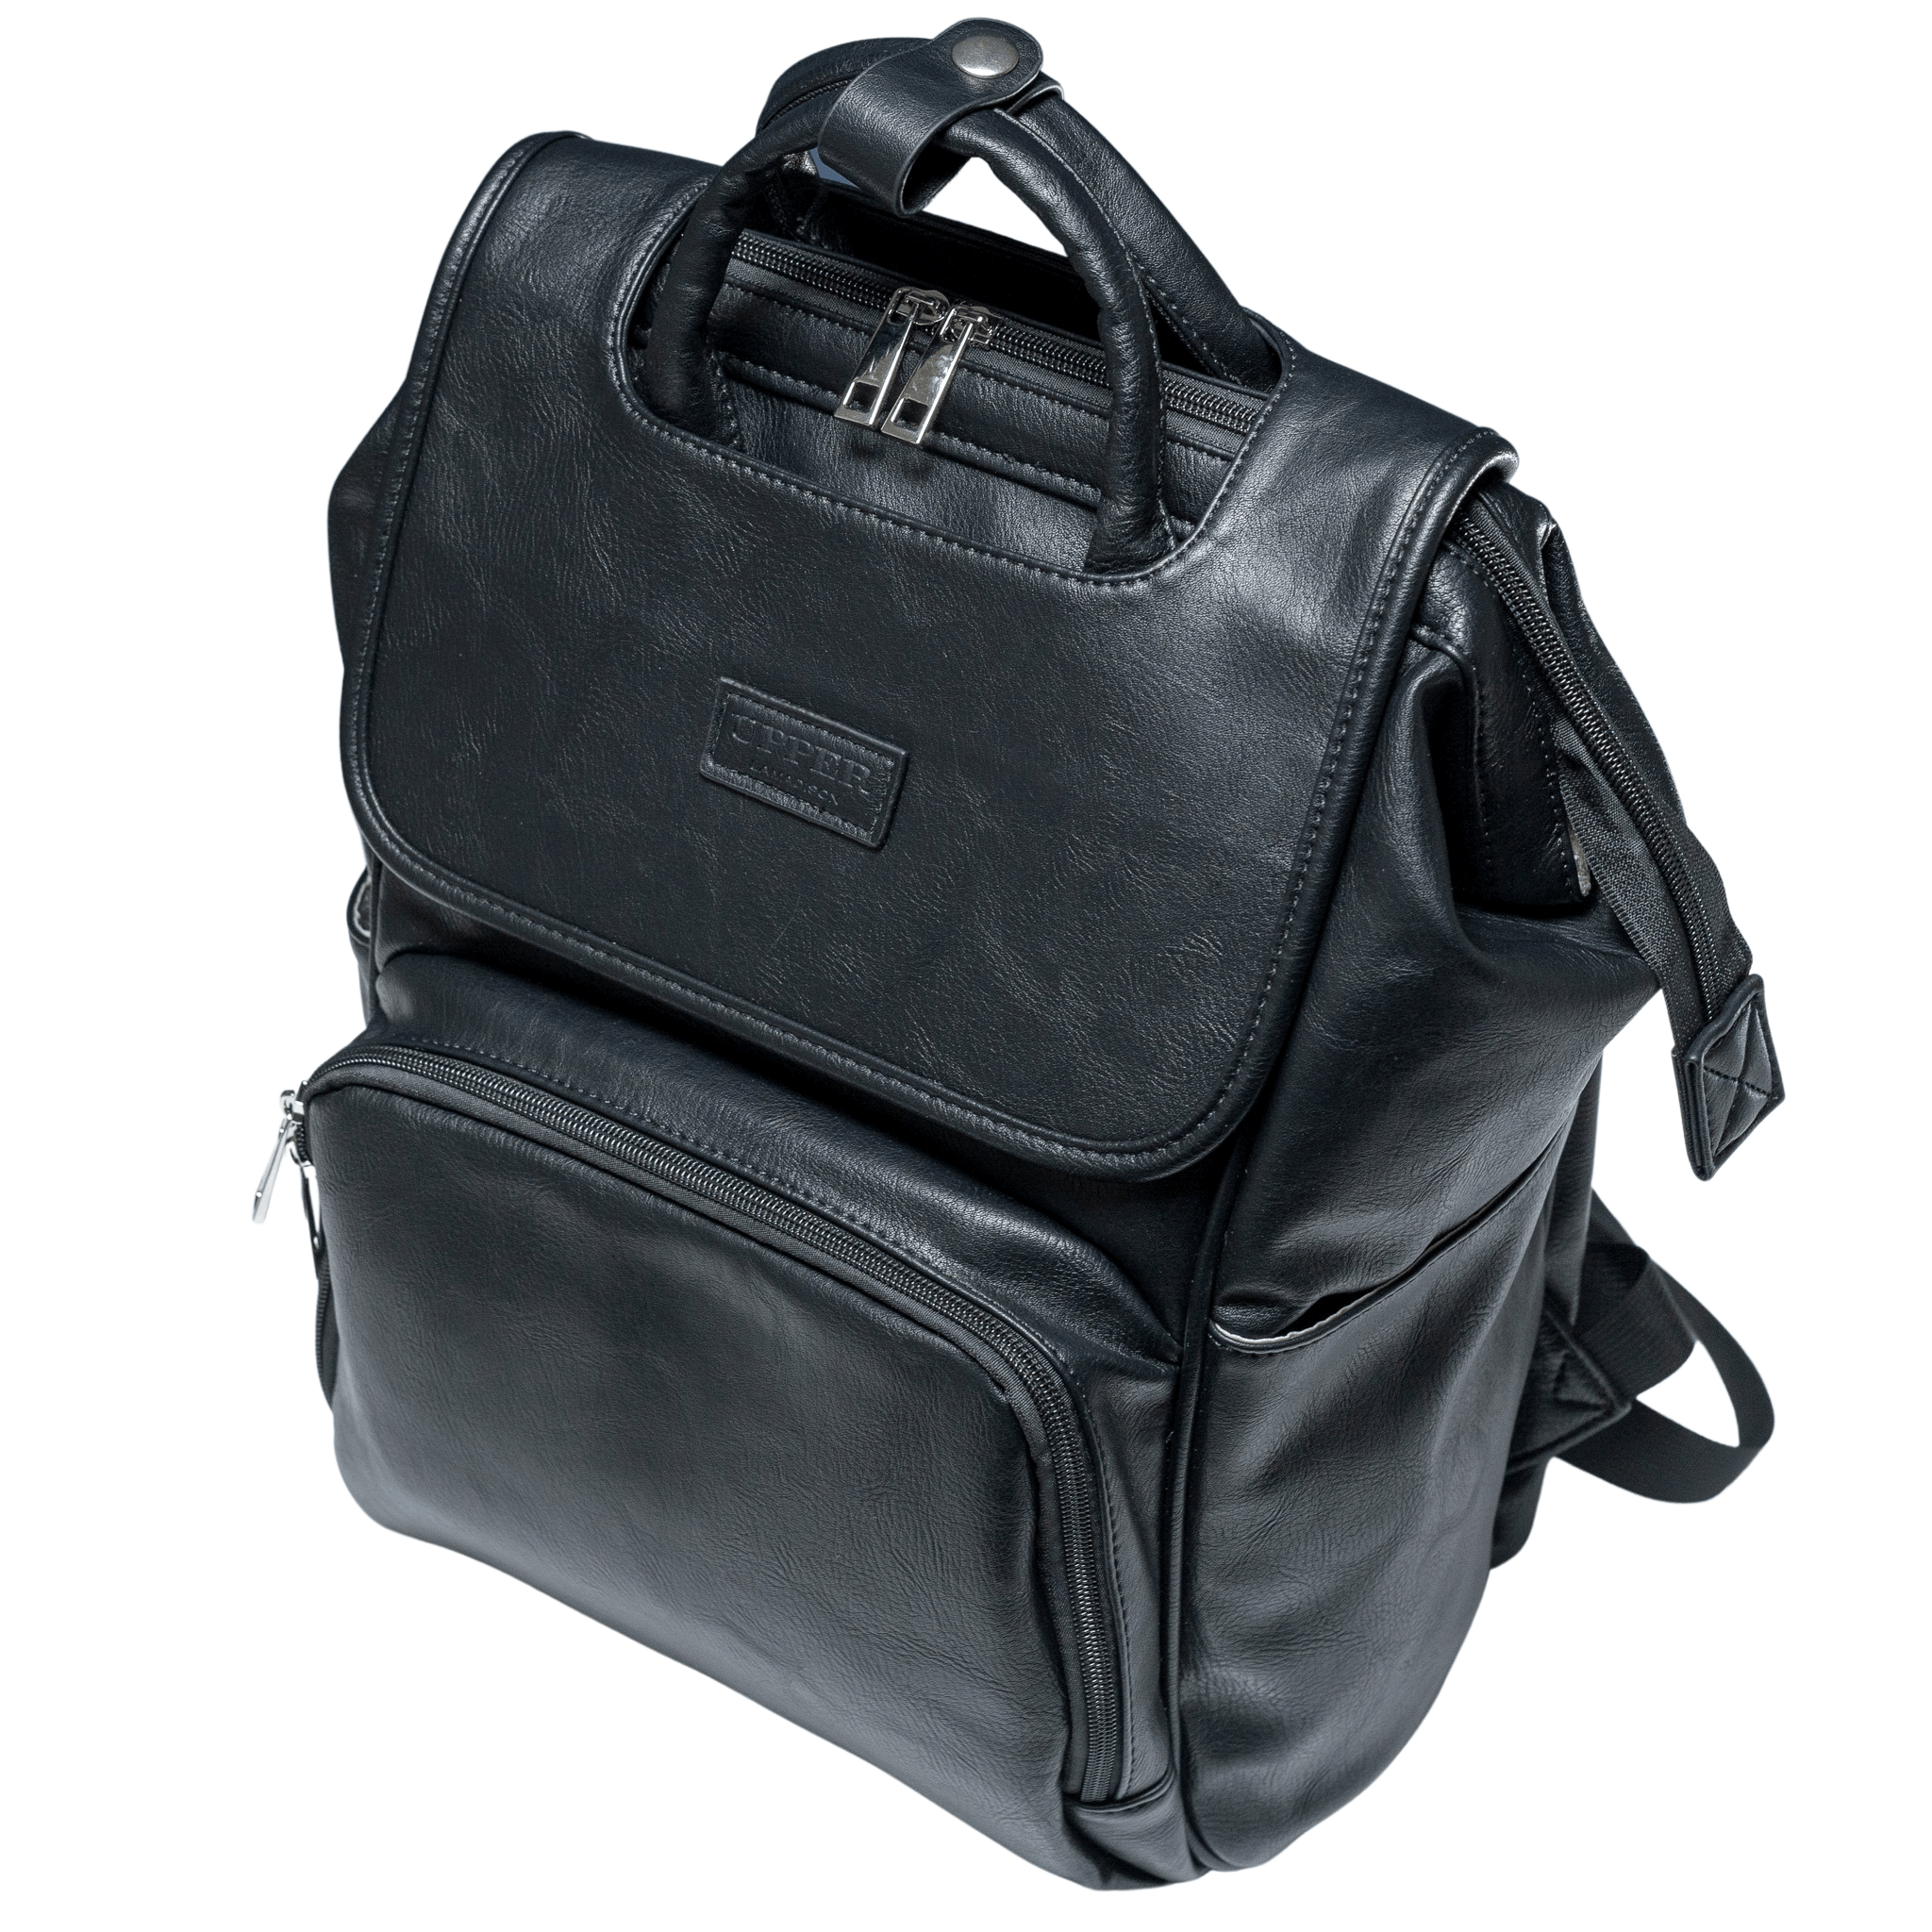 UPPER 549 - Luggage & Bags > Diaper Bags Black La Madison 2.0 - Elegant Vegan Leather Diaper Bag Backpack